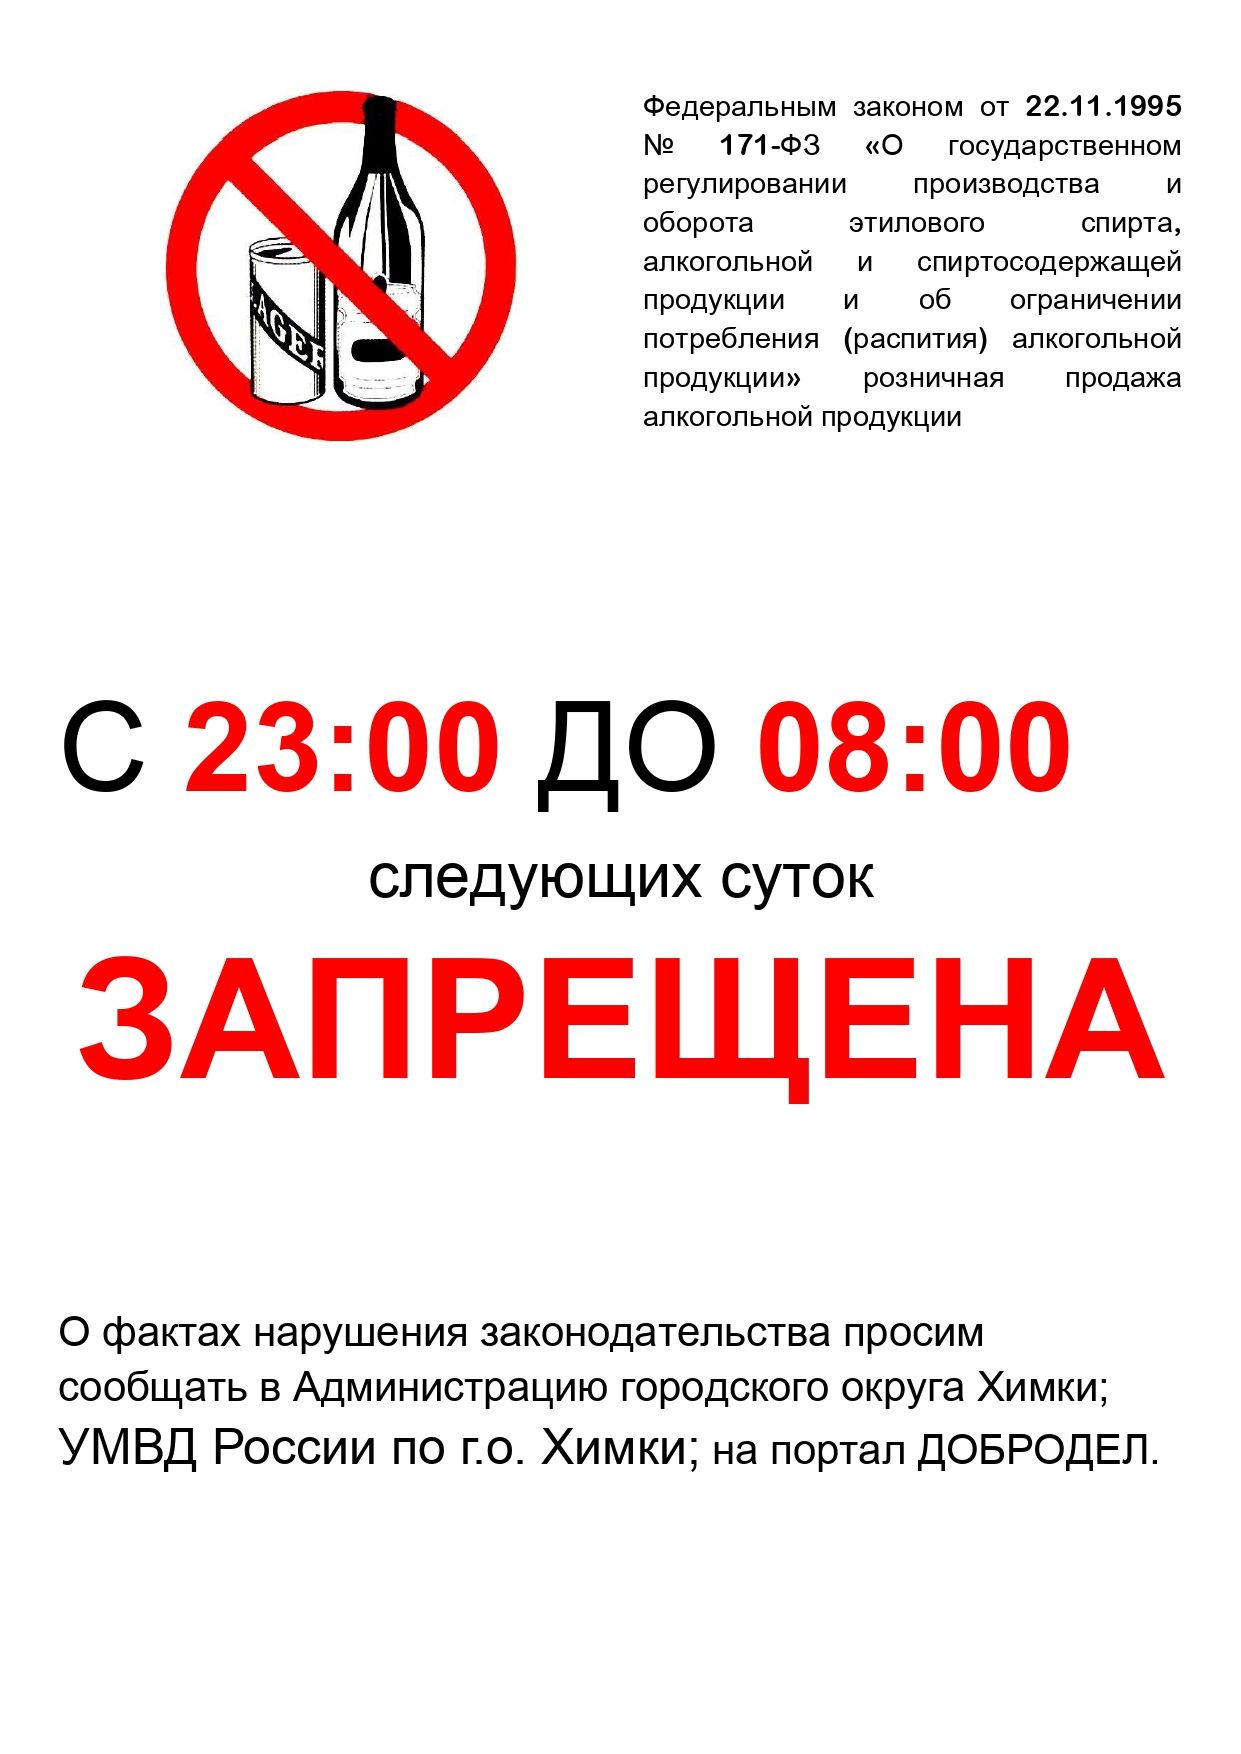 Запретят 1 июня. Запрещено продавать алкоголь. Объявление о запрете продажи алкогольной продукции.